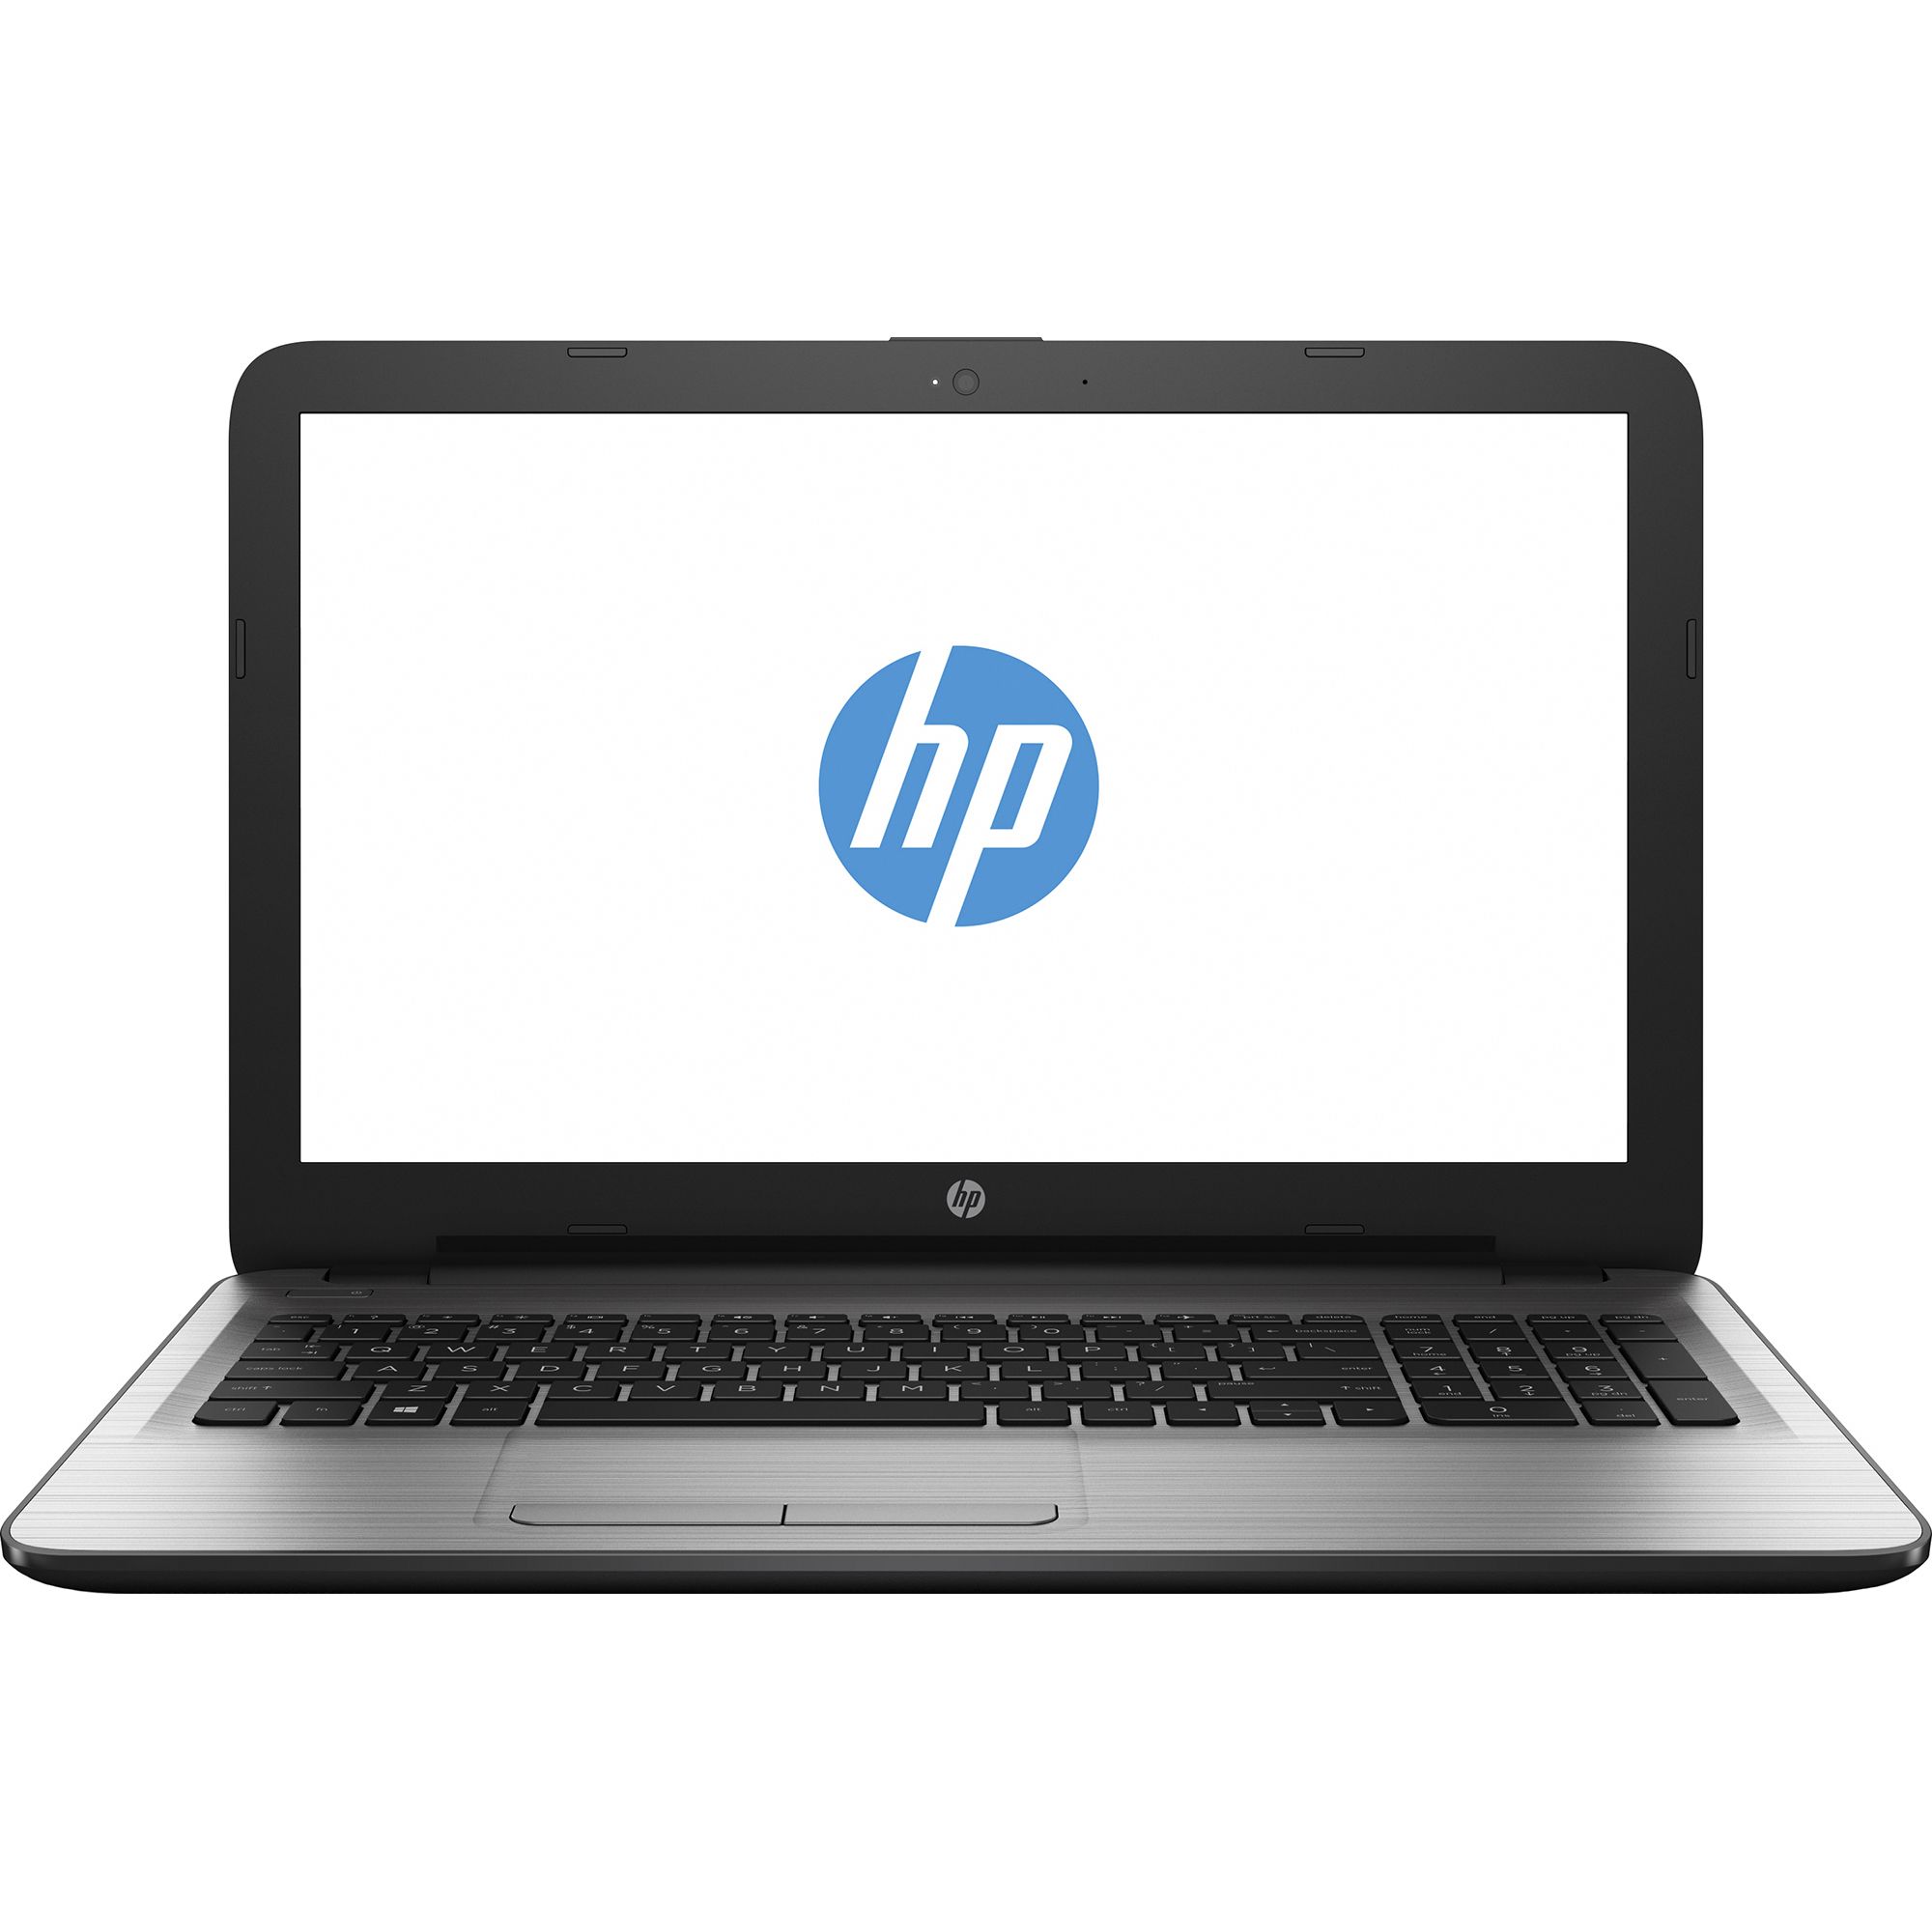 Laptop HP 250 G5, Intel Core i5-6200U, 4GB DDR4, HDD 1TB, AMD Radeon R5 M430 2GB, Free DOS